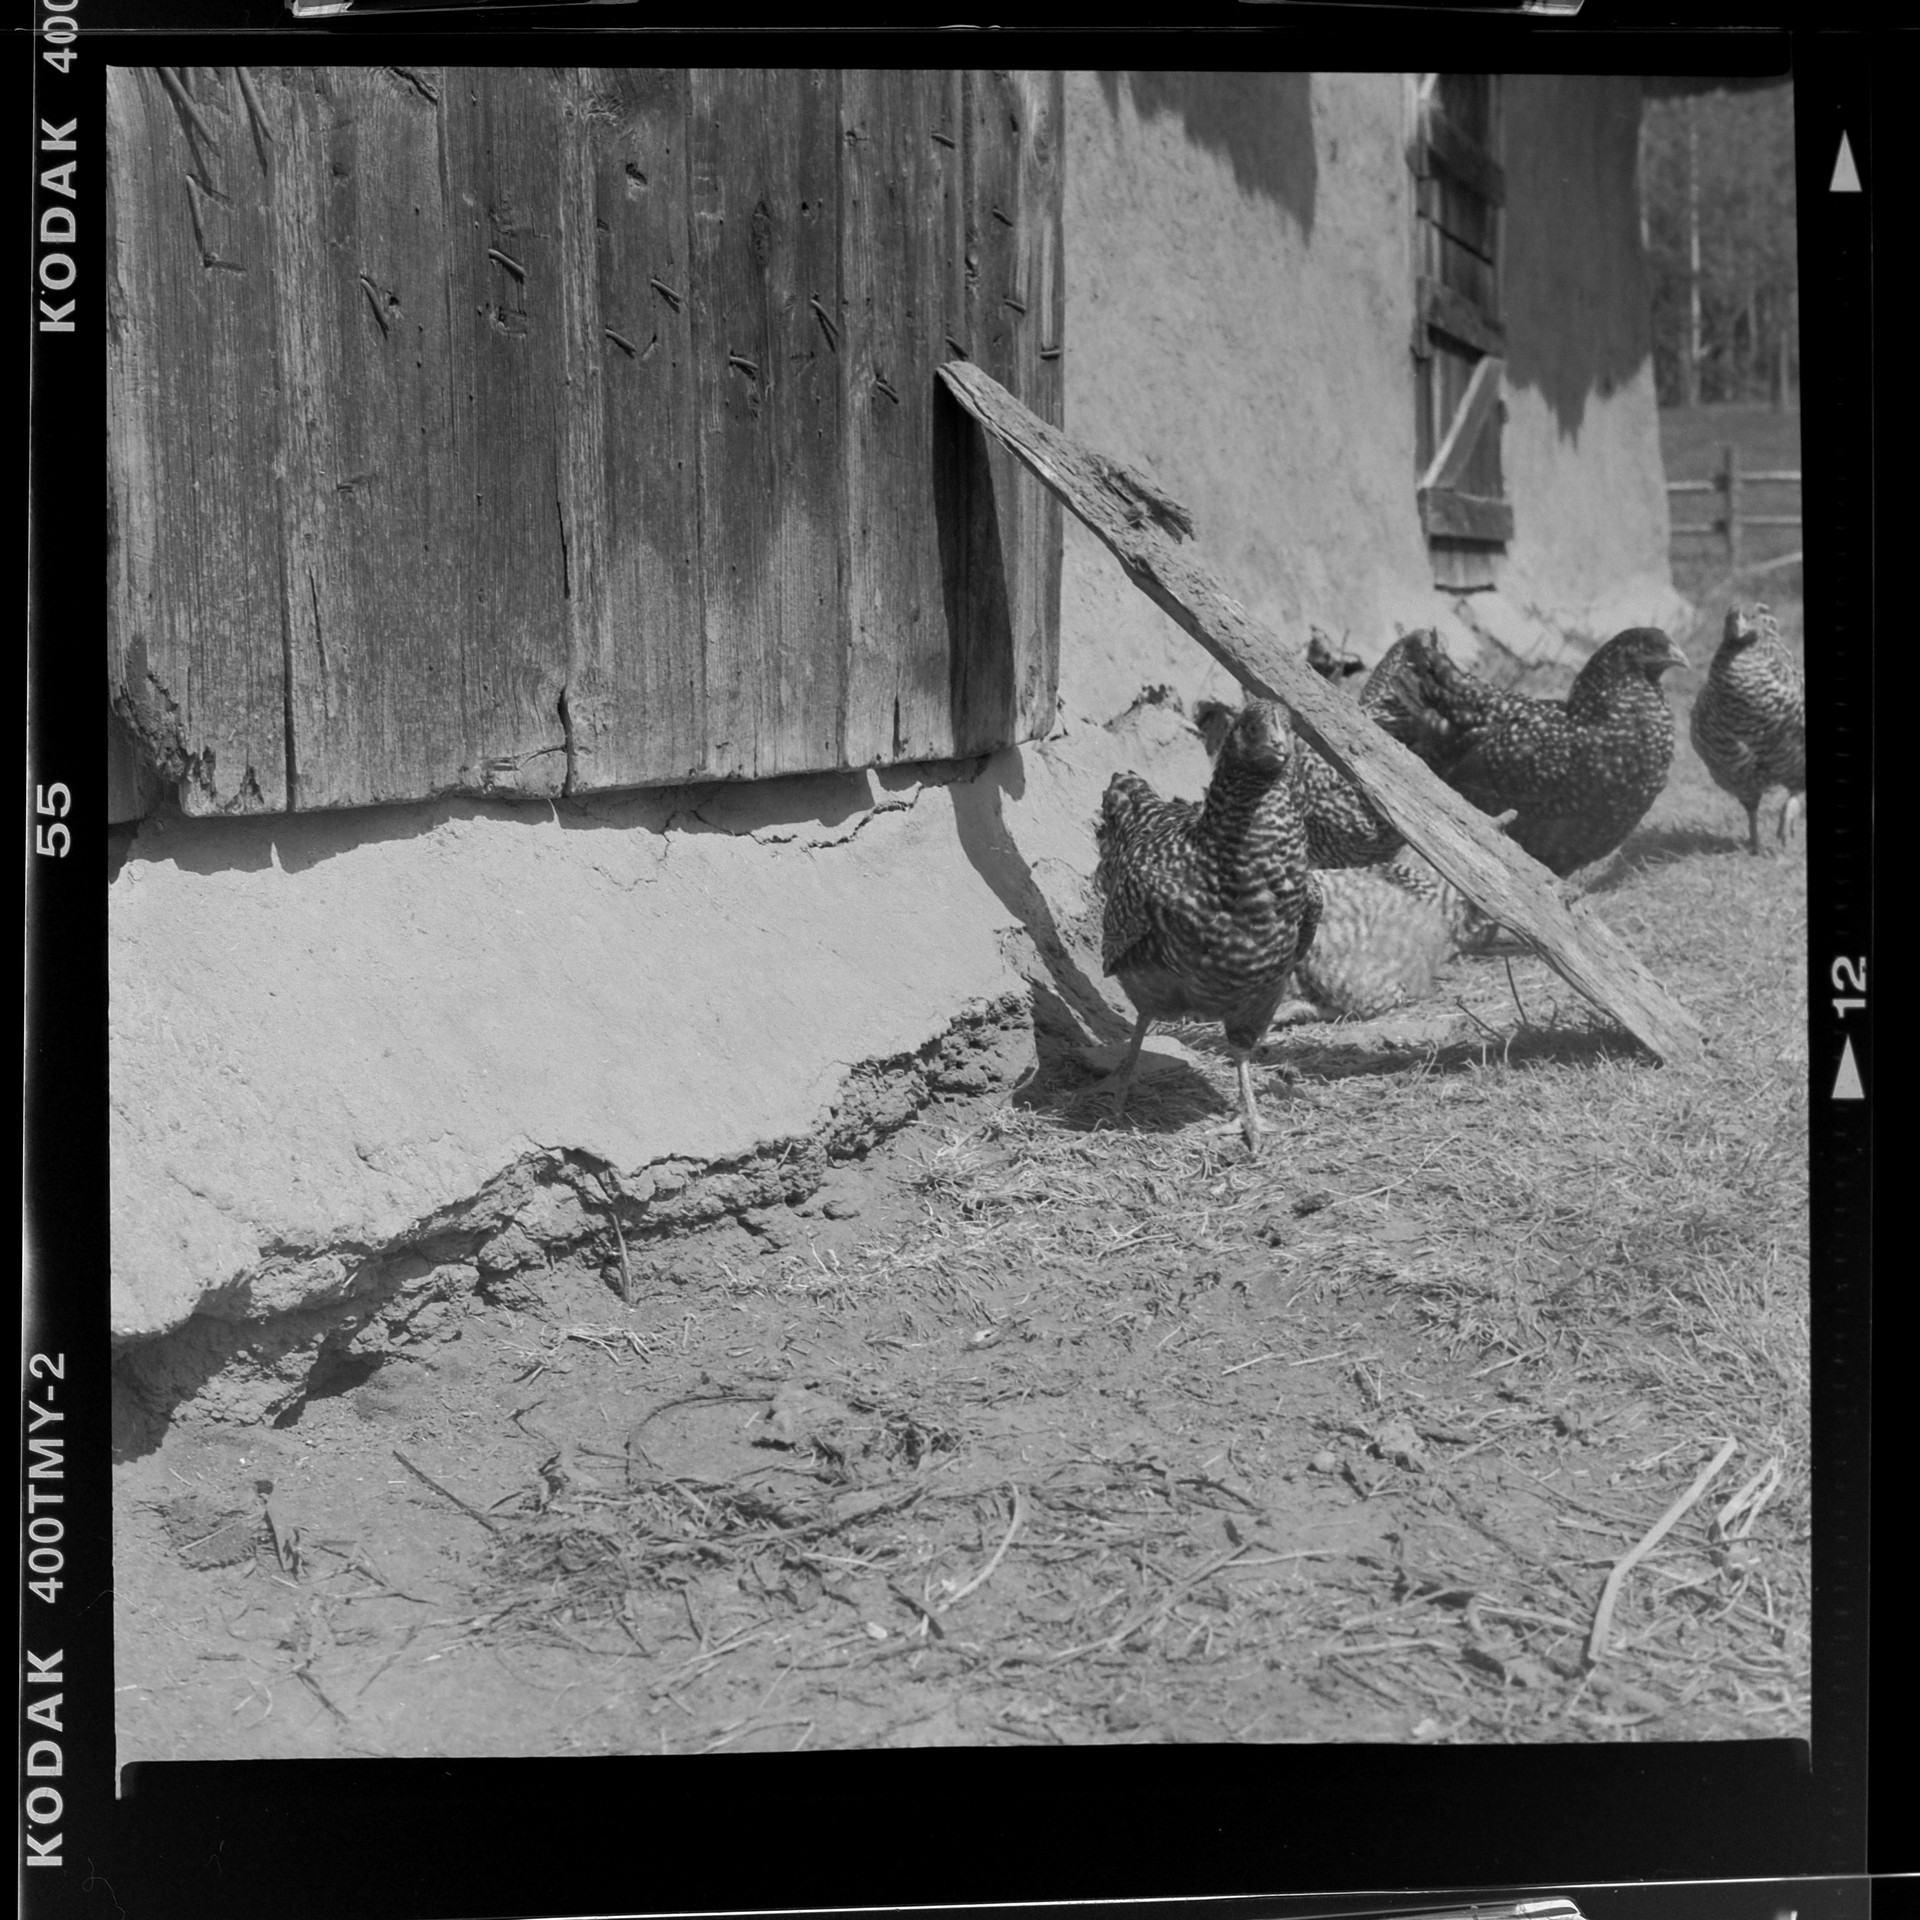 Barred Rock Chicken Coop